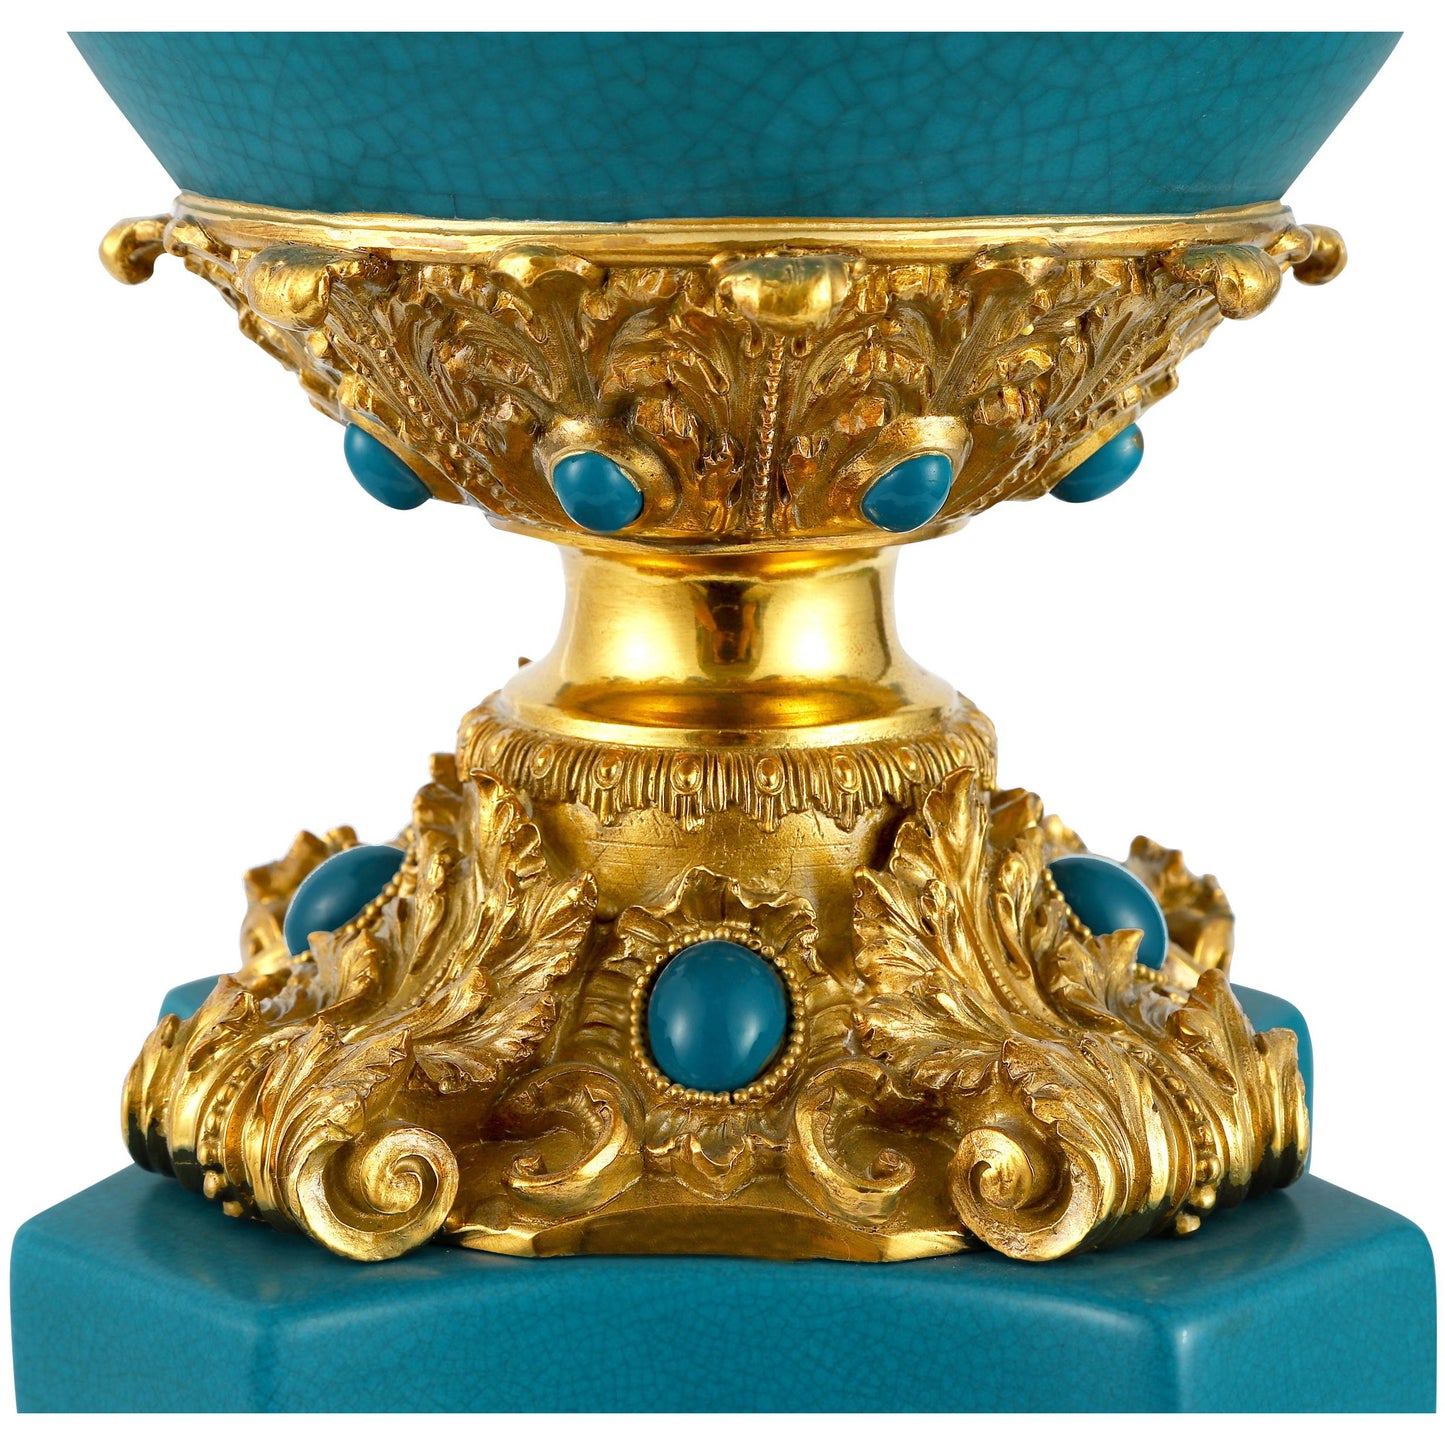 DECOELEVEN ™ Exquisite Cherub Vase in Classic Blue